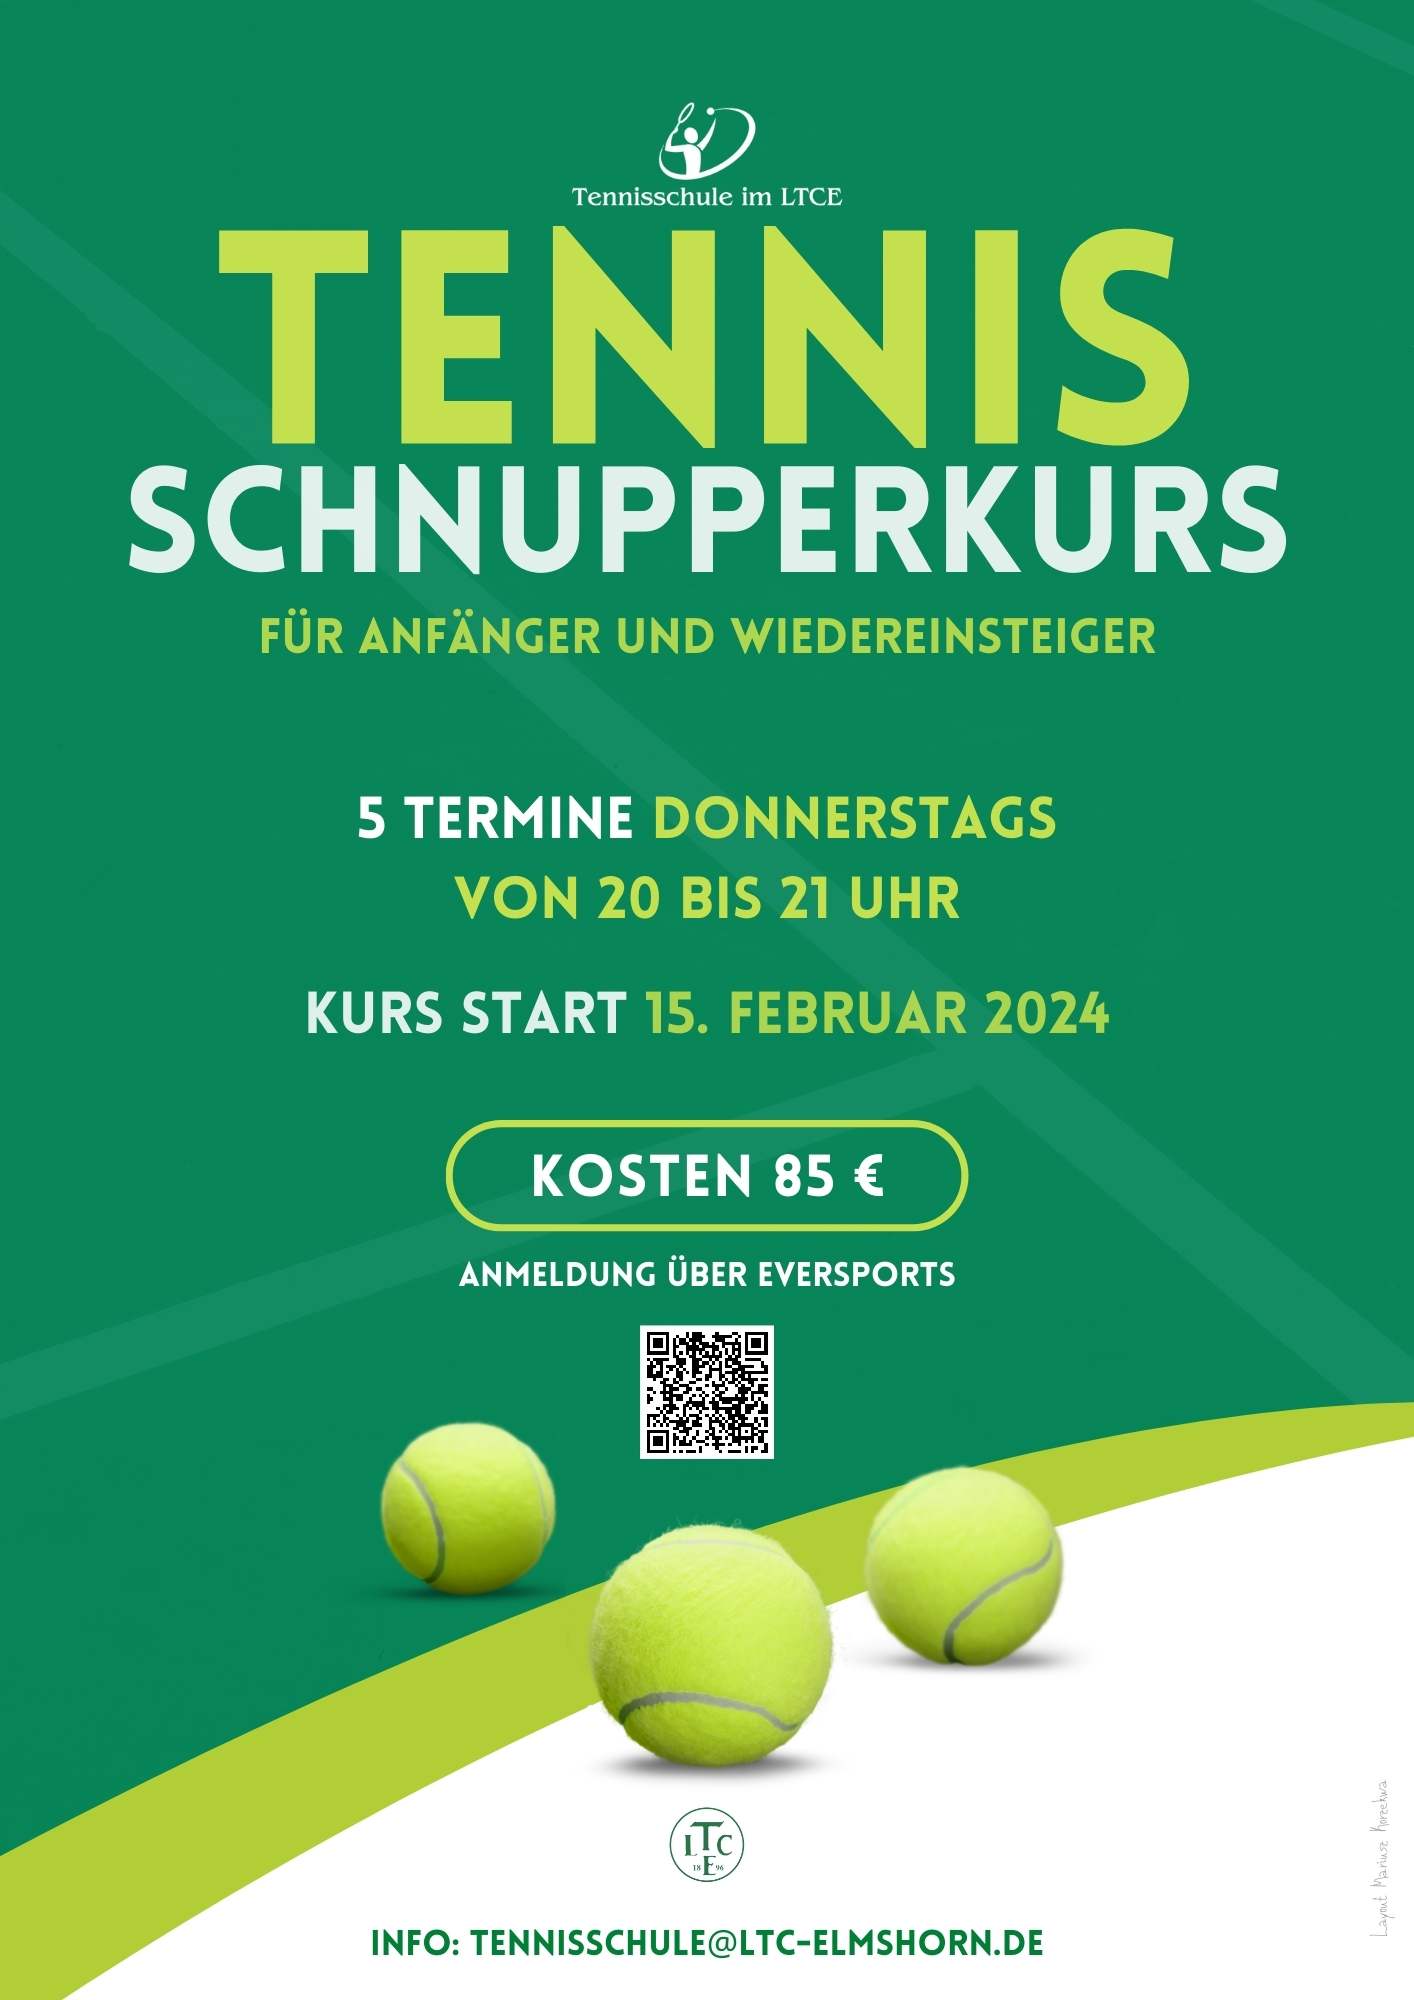 Tennis Schnupperkurs (1)